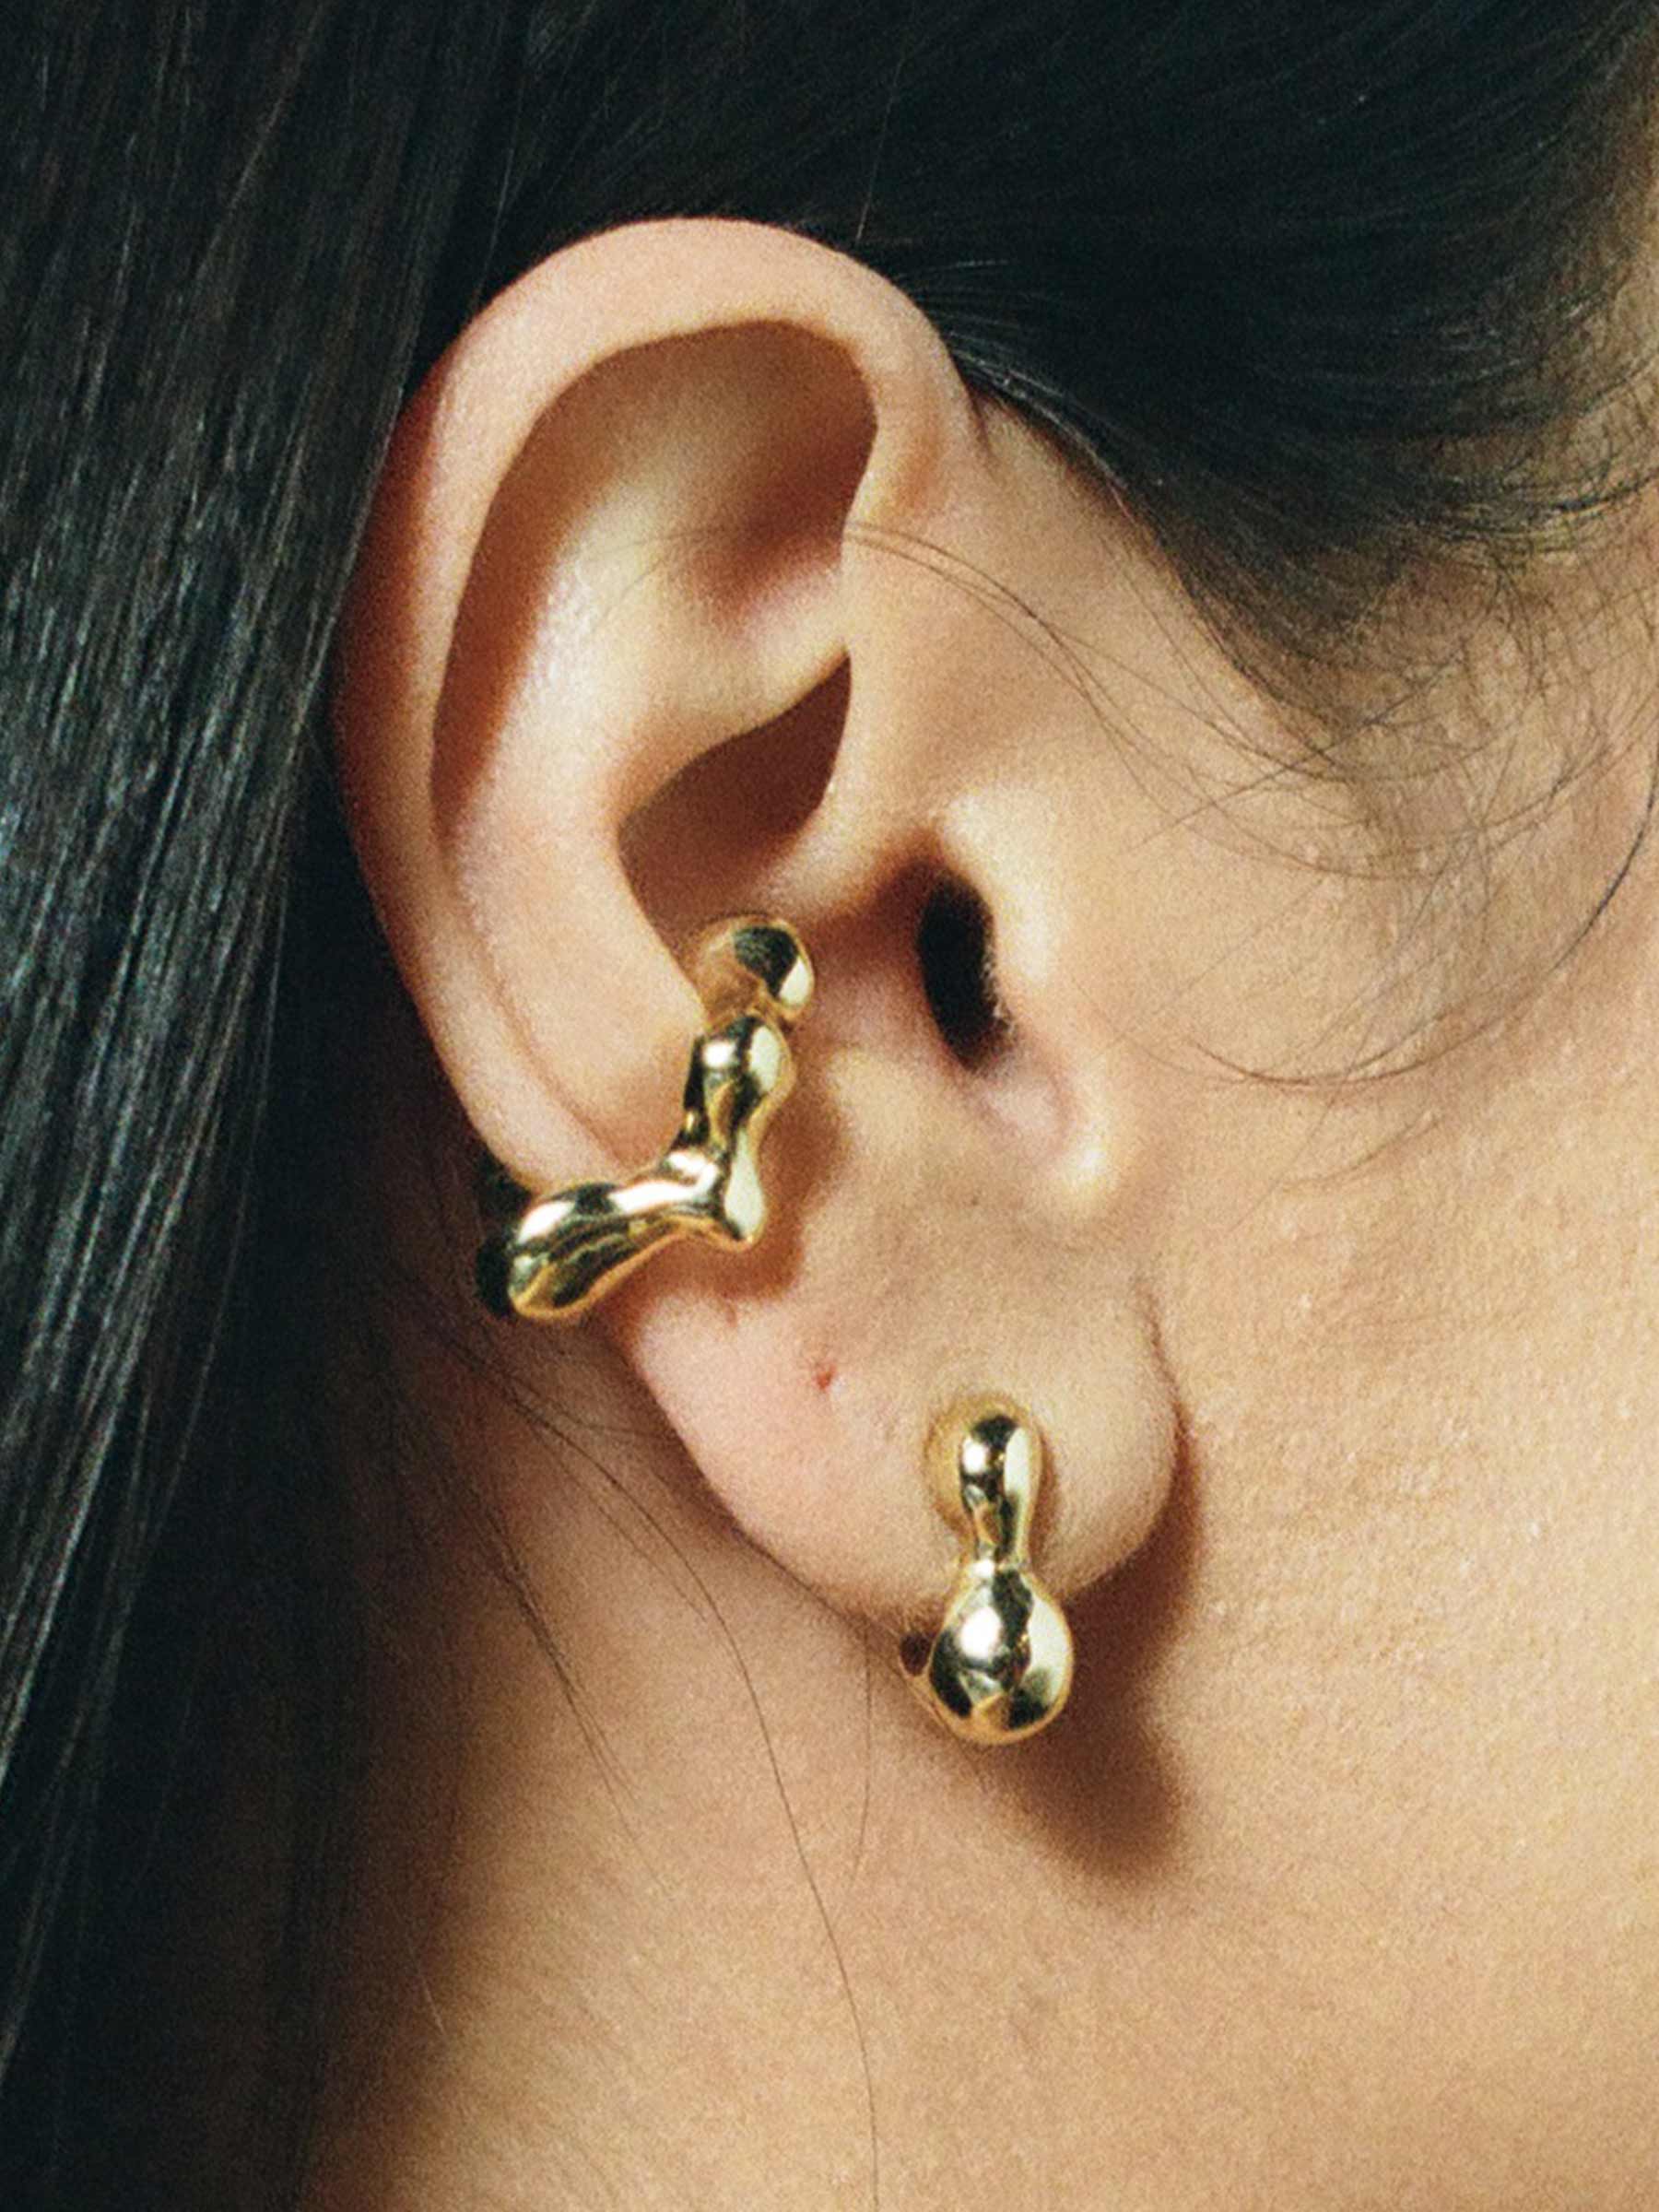 New model Gold Color Stud Earrings for girls | traditional Gold Color Stud  Earrings for Women -Traditional Gold Color Stud Earrings : Amazon.in:  Fashion